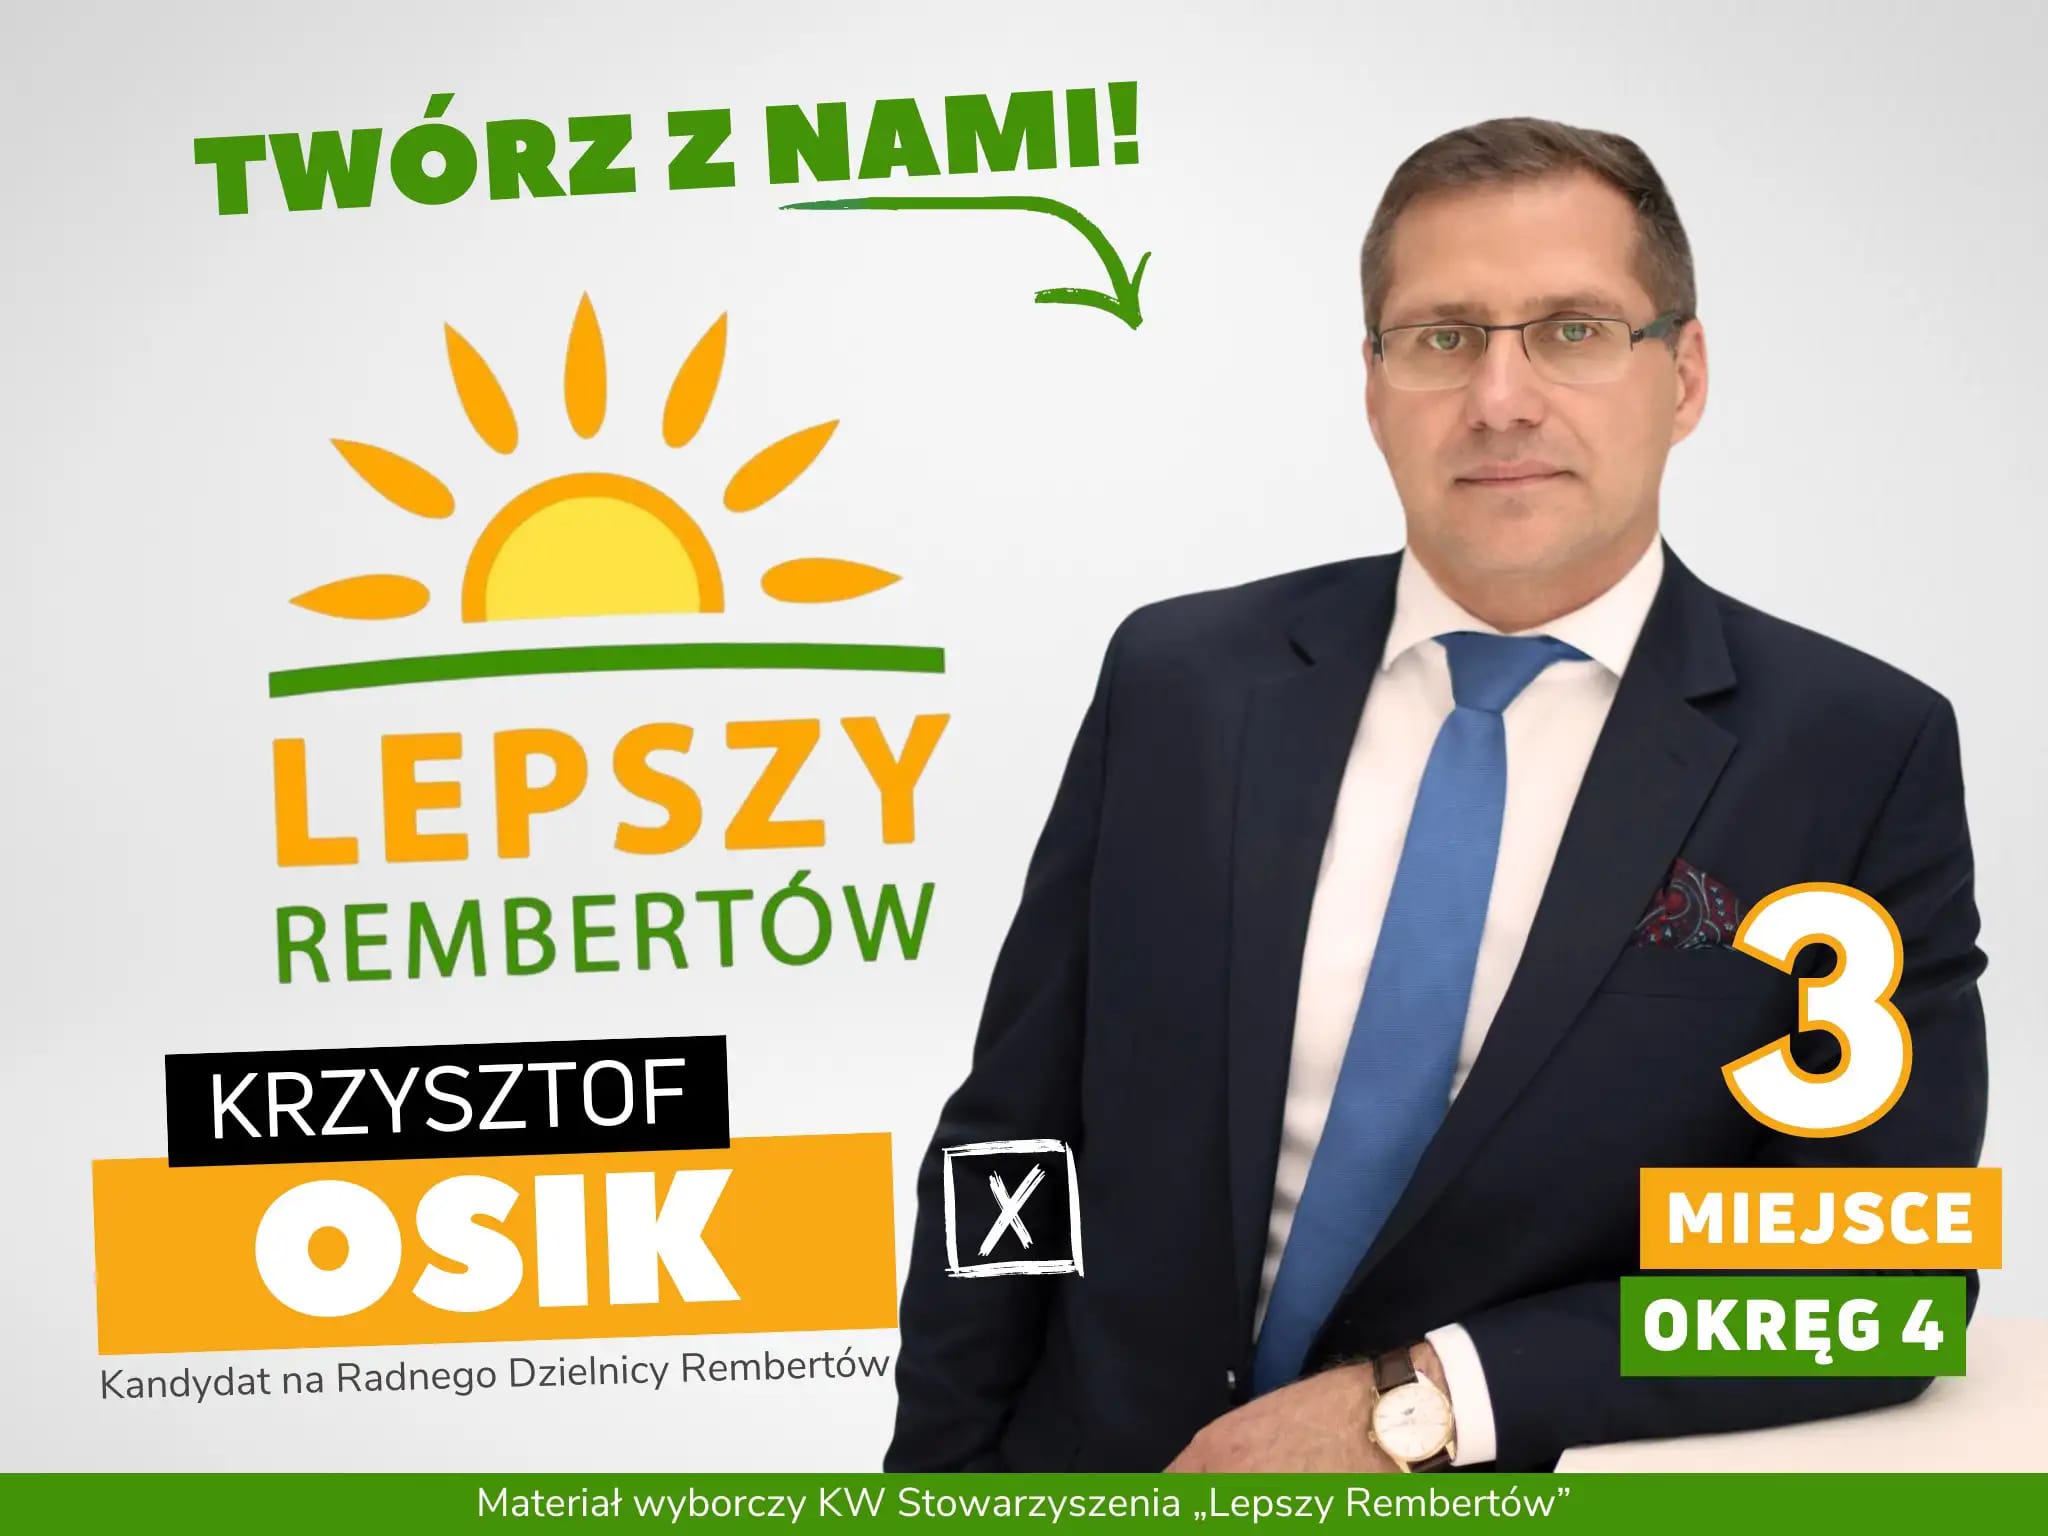 Krzysztof Osik Okręg 4 miejsce 3